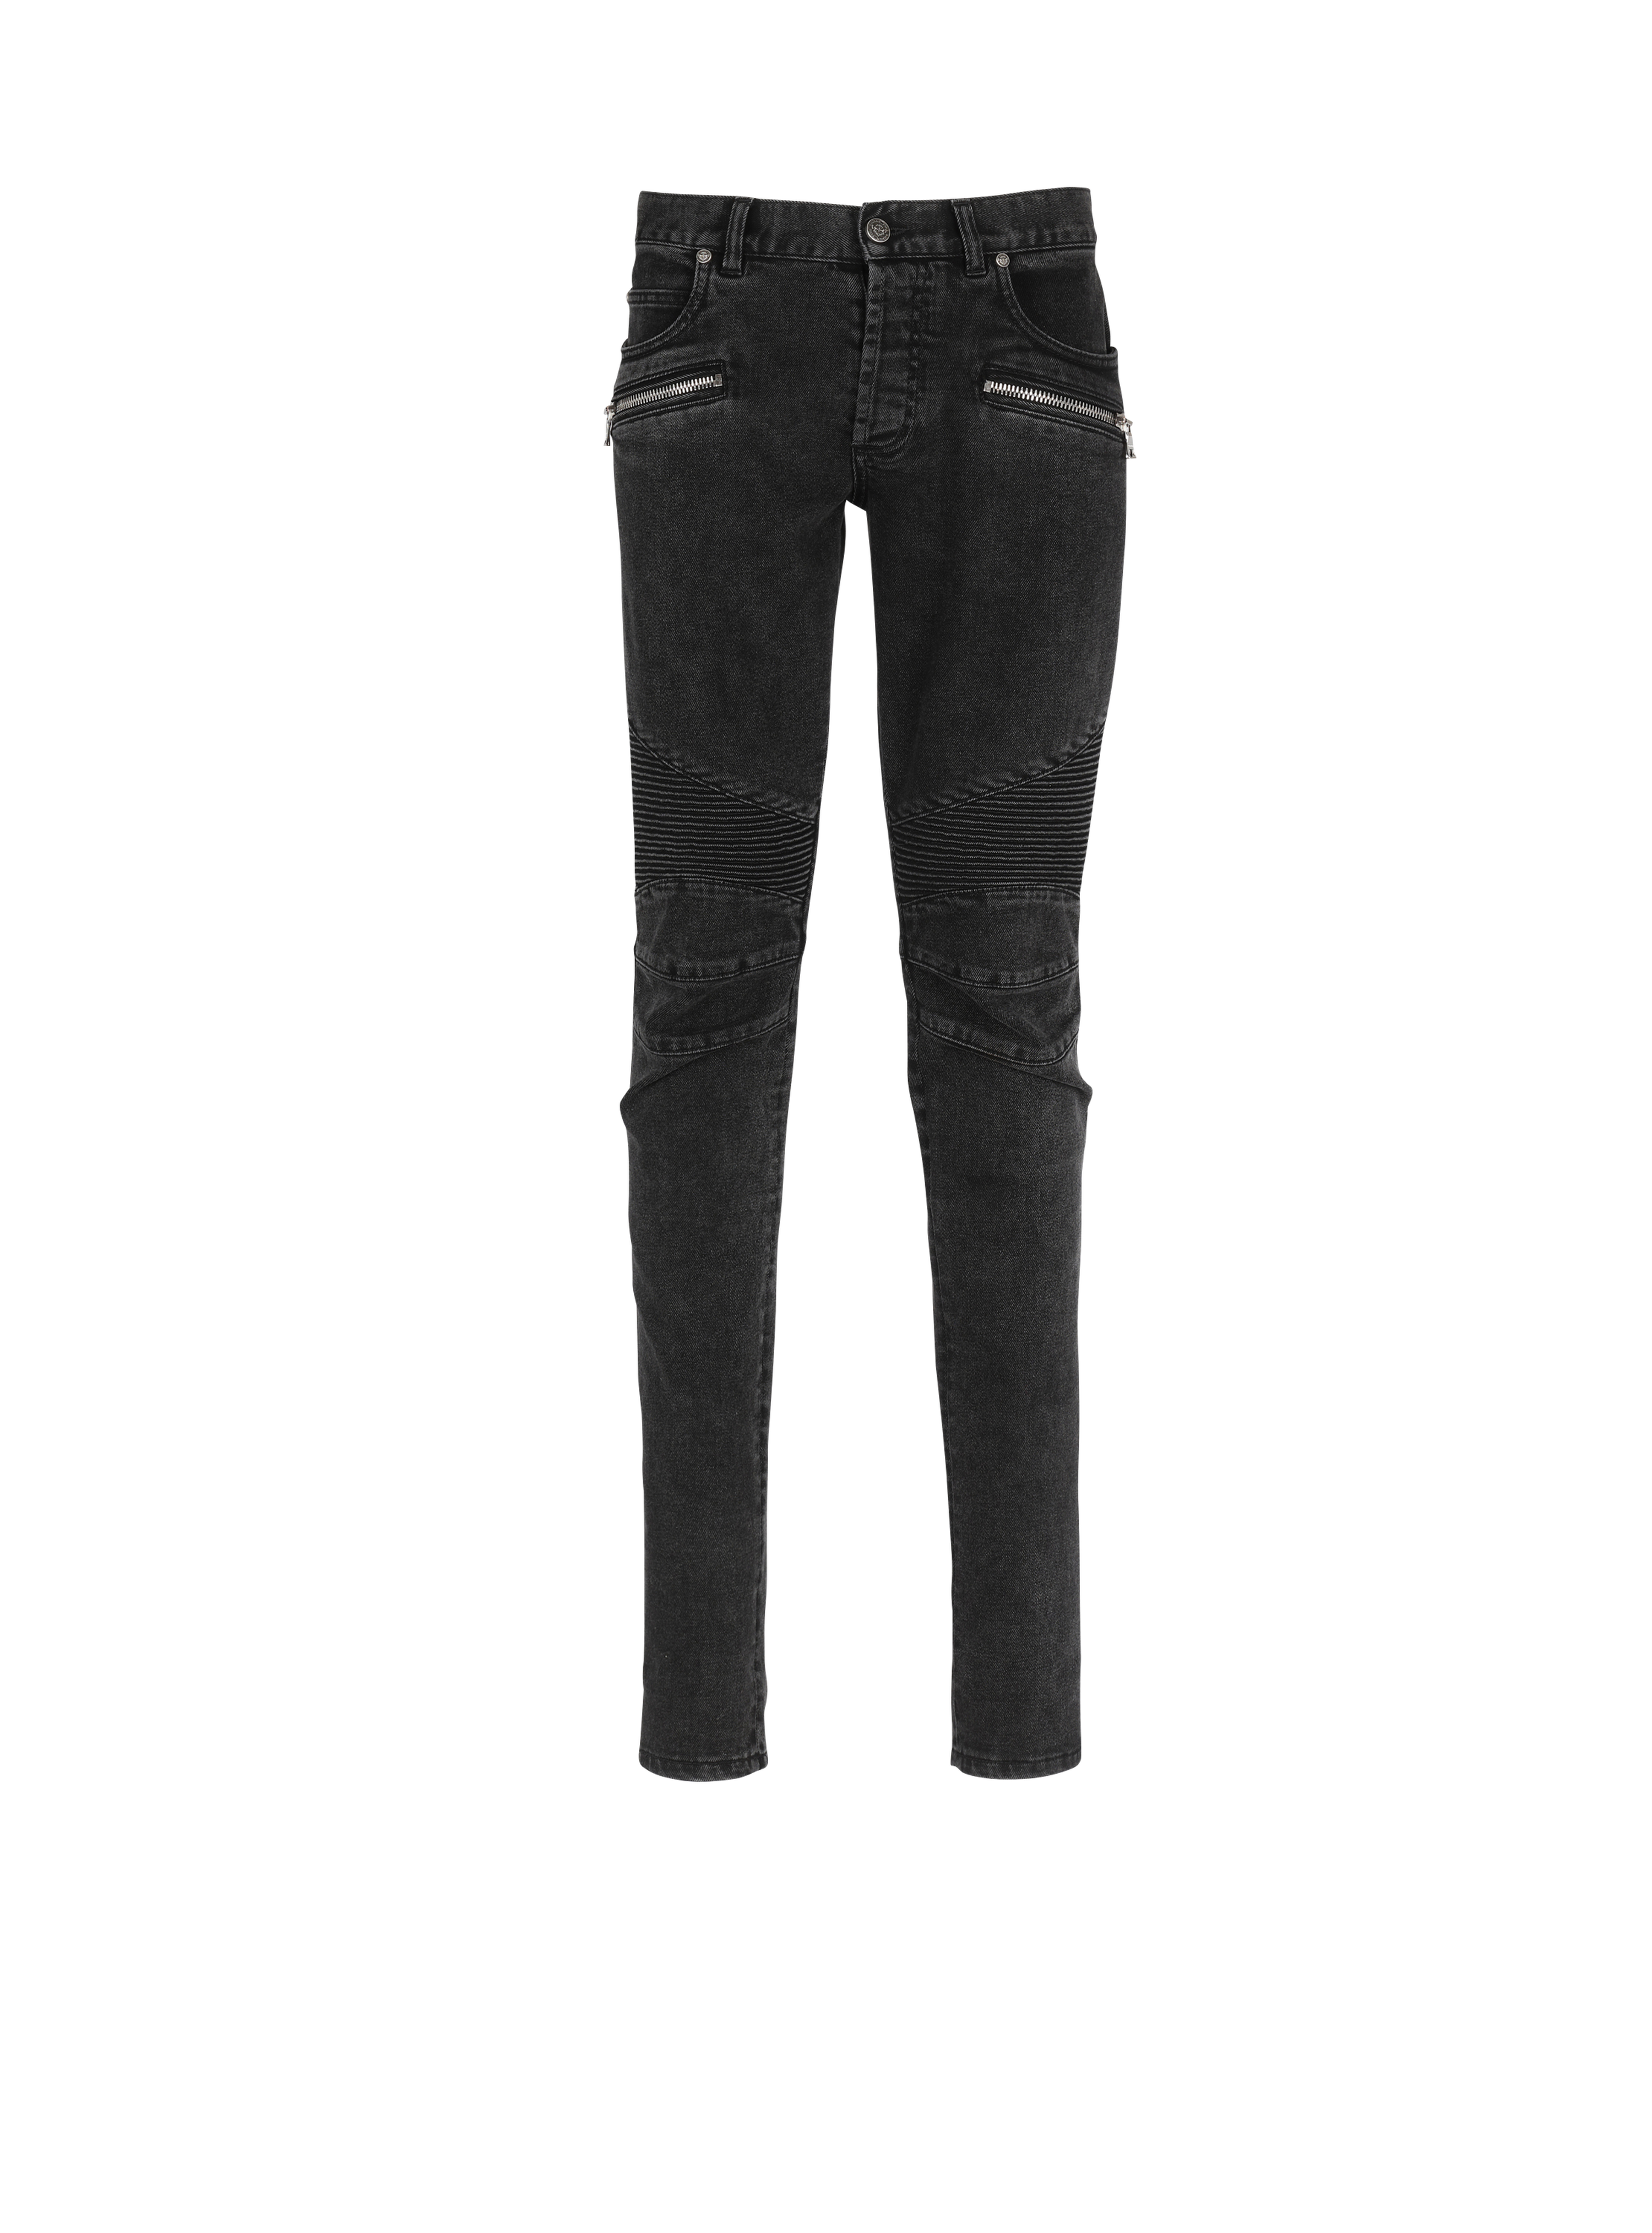 Jeans slim in cotone delavé con inserti a coste e monogramma Balmain sull’orlo, nero